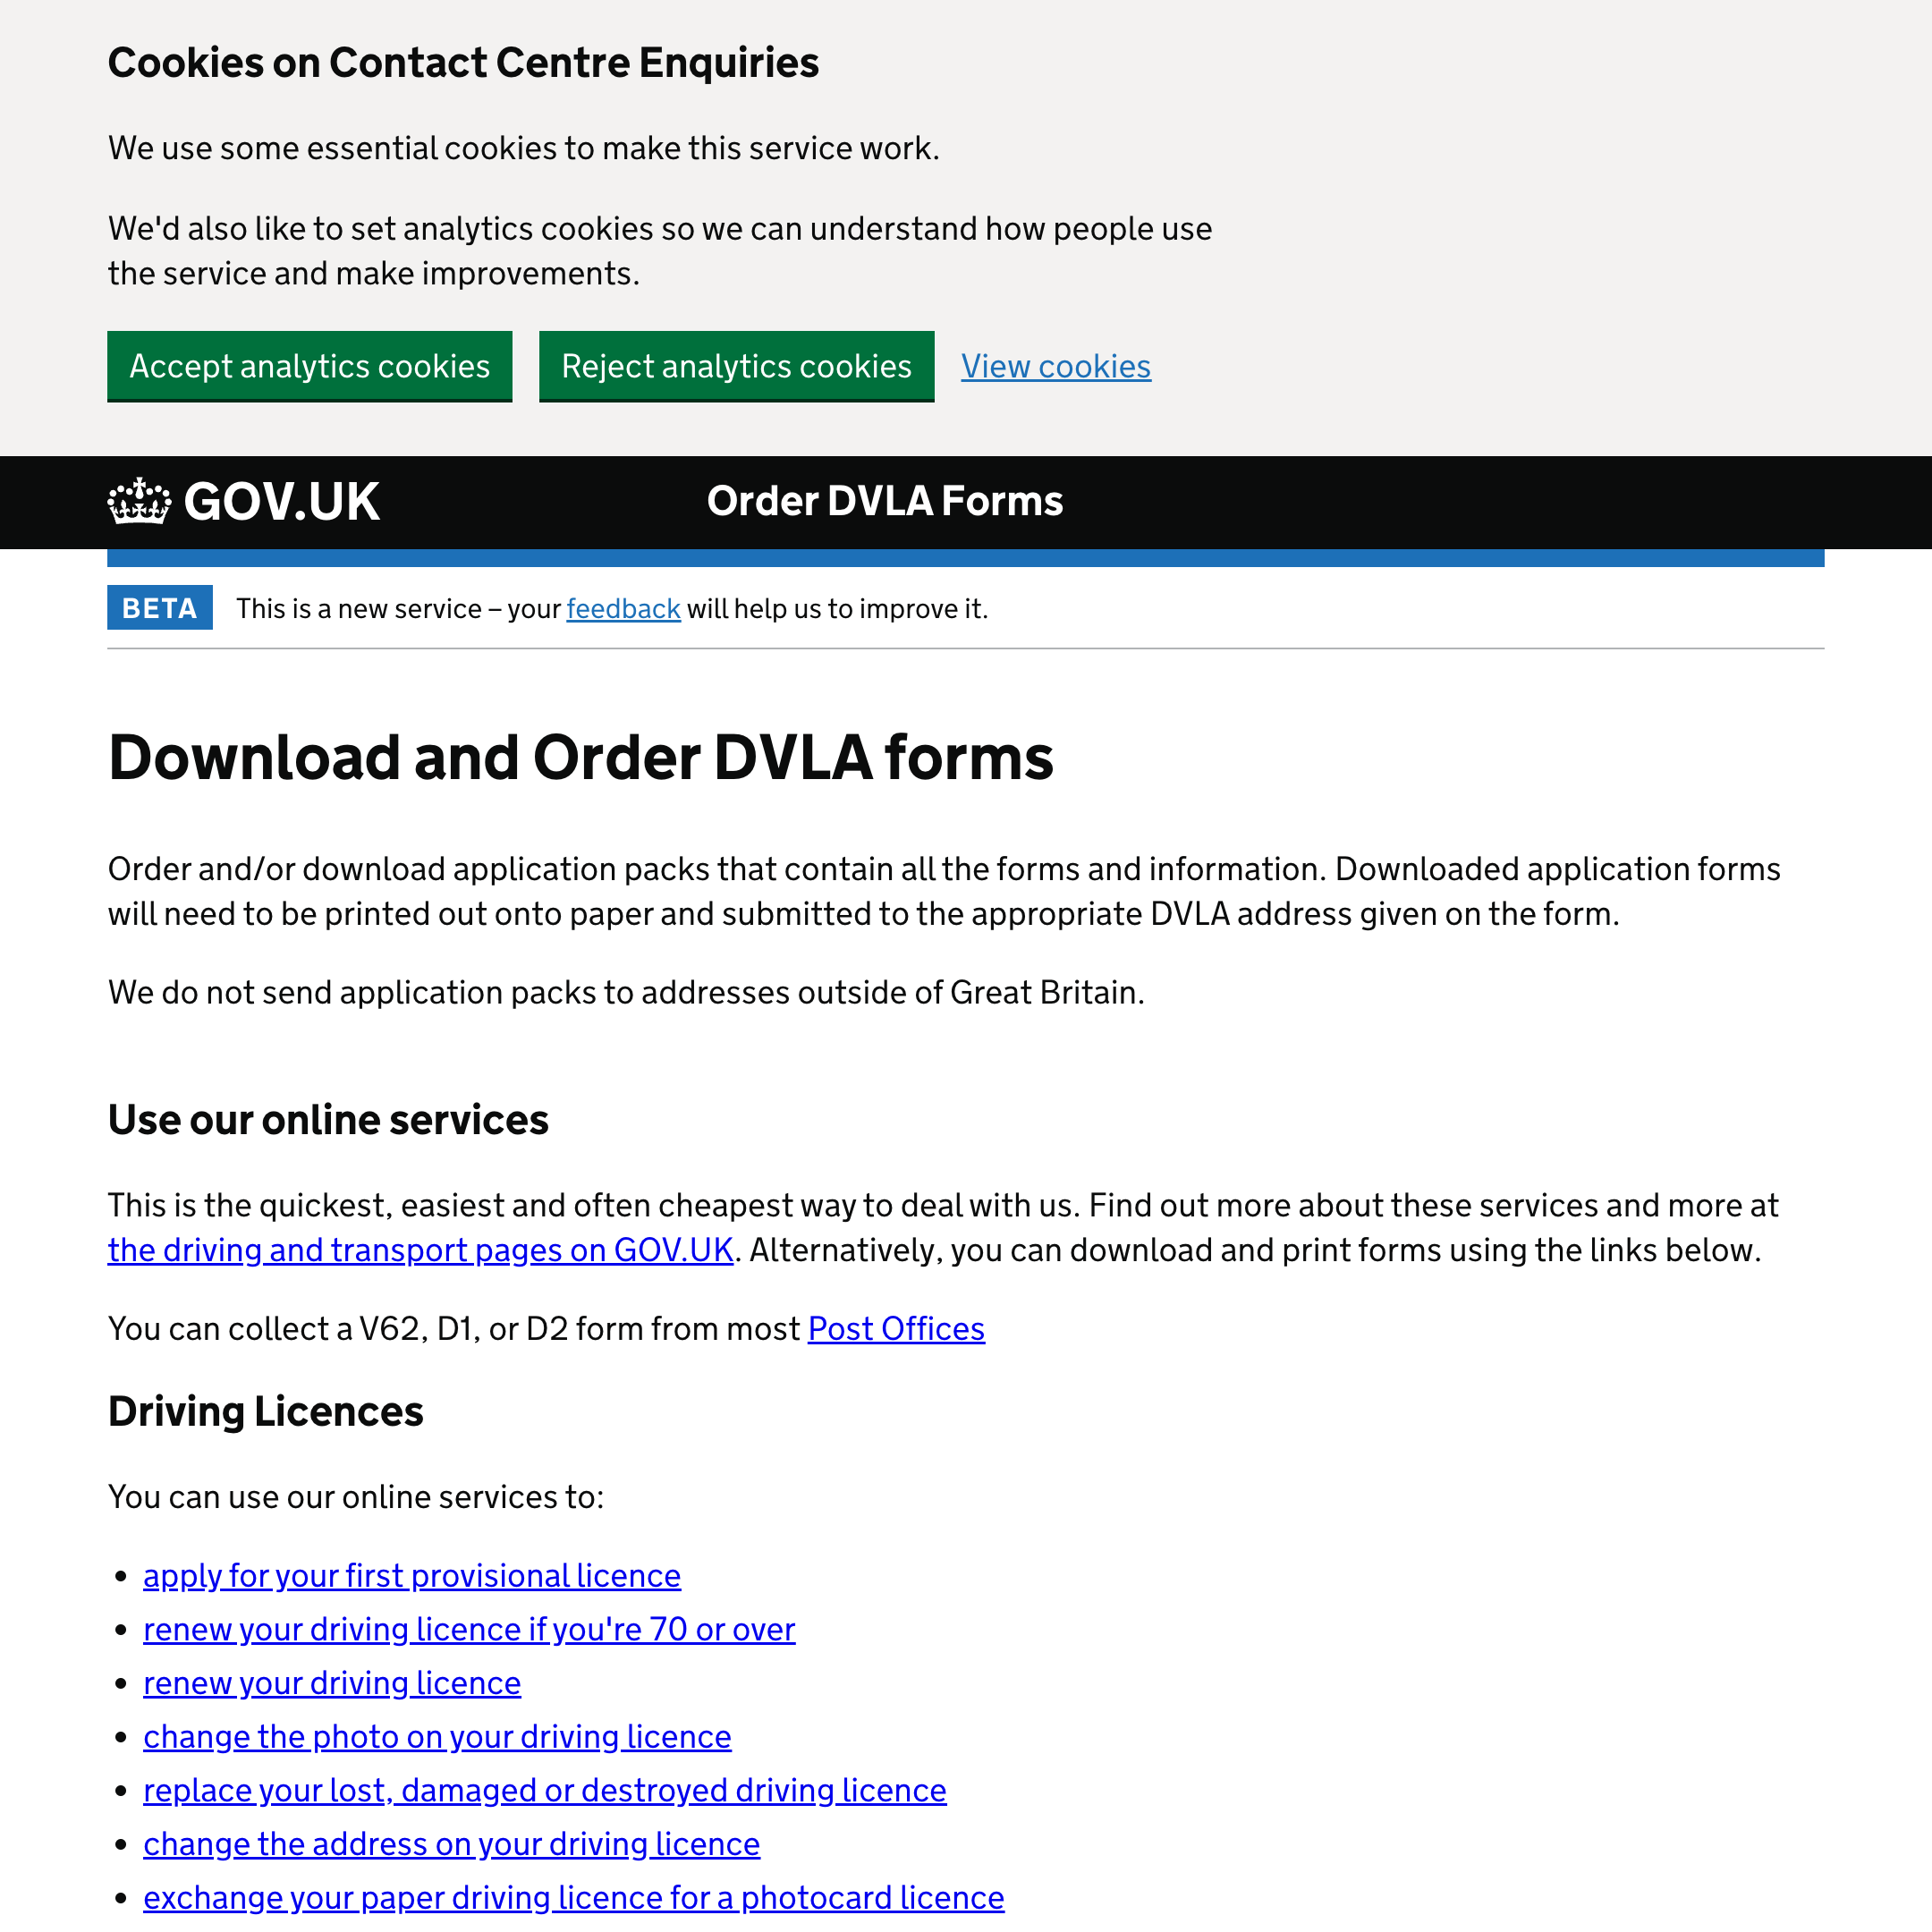 Order DVLA Forms